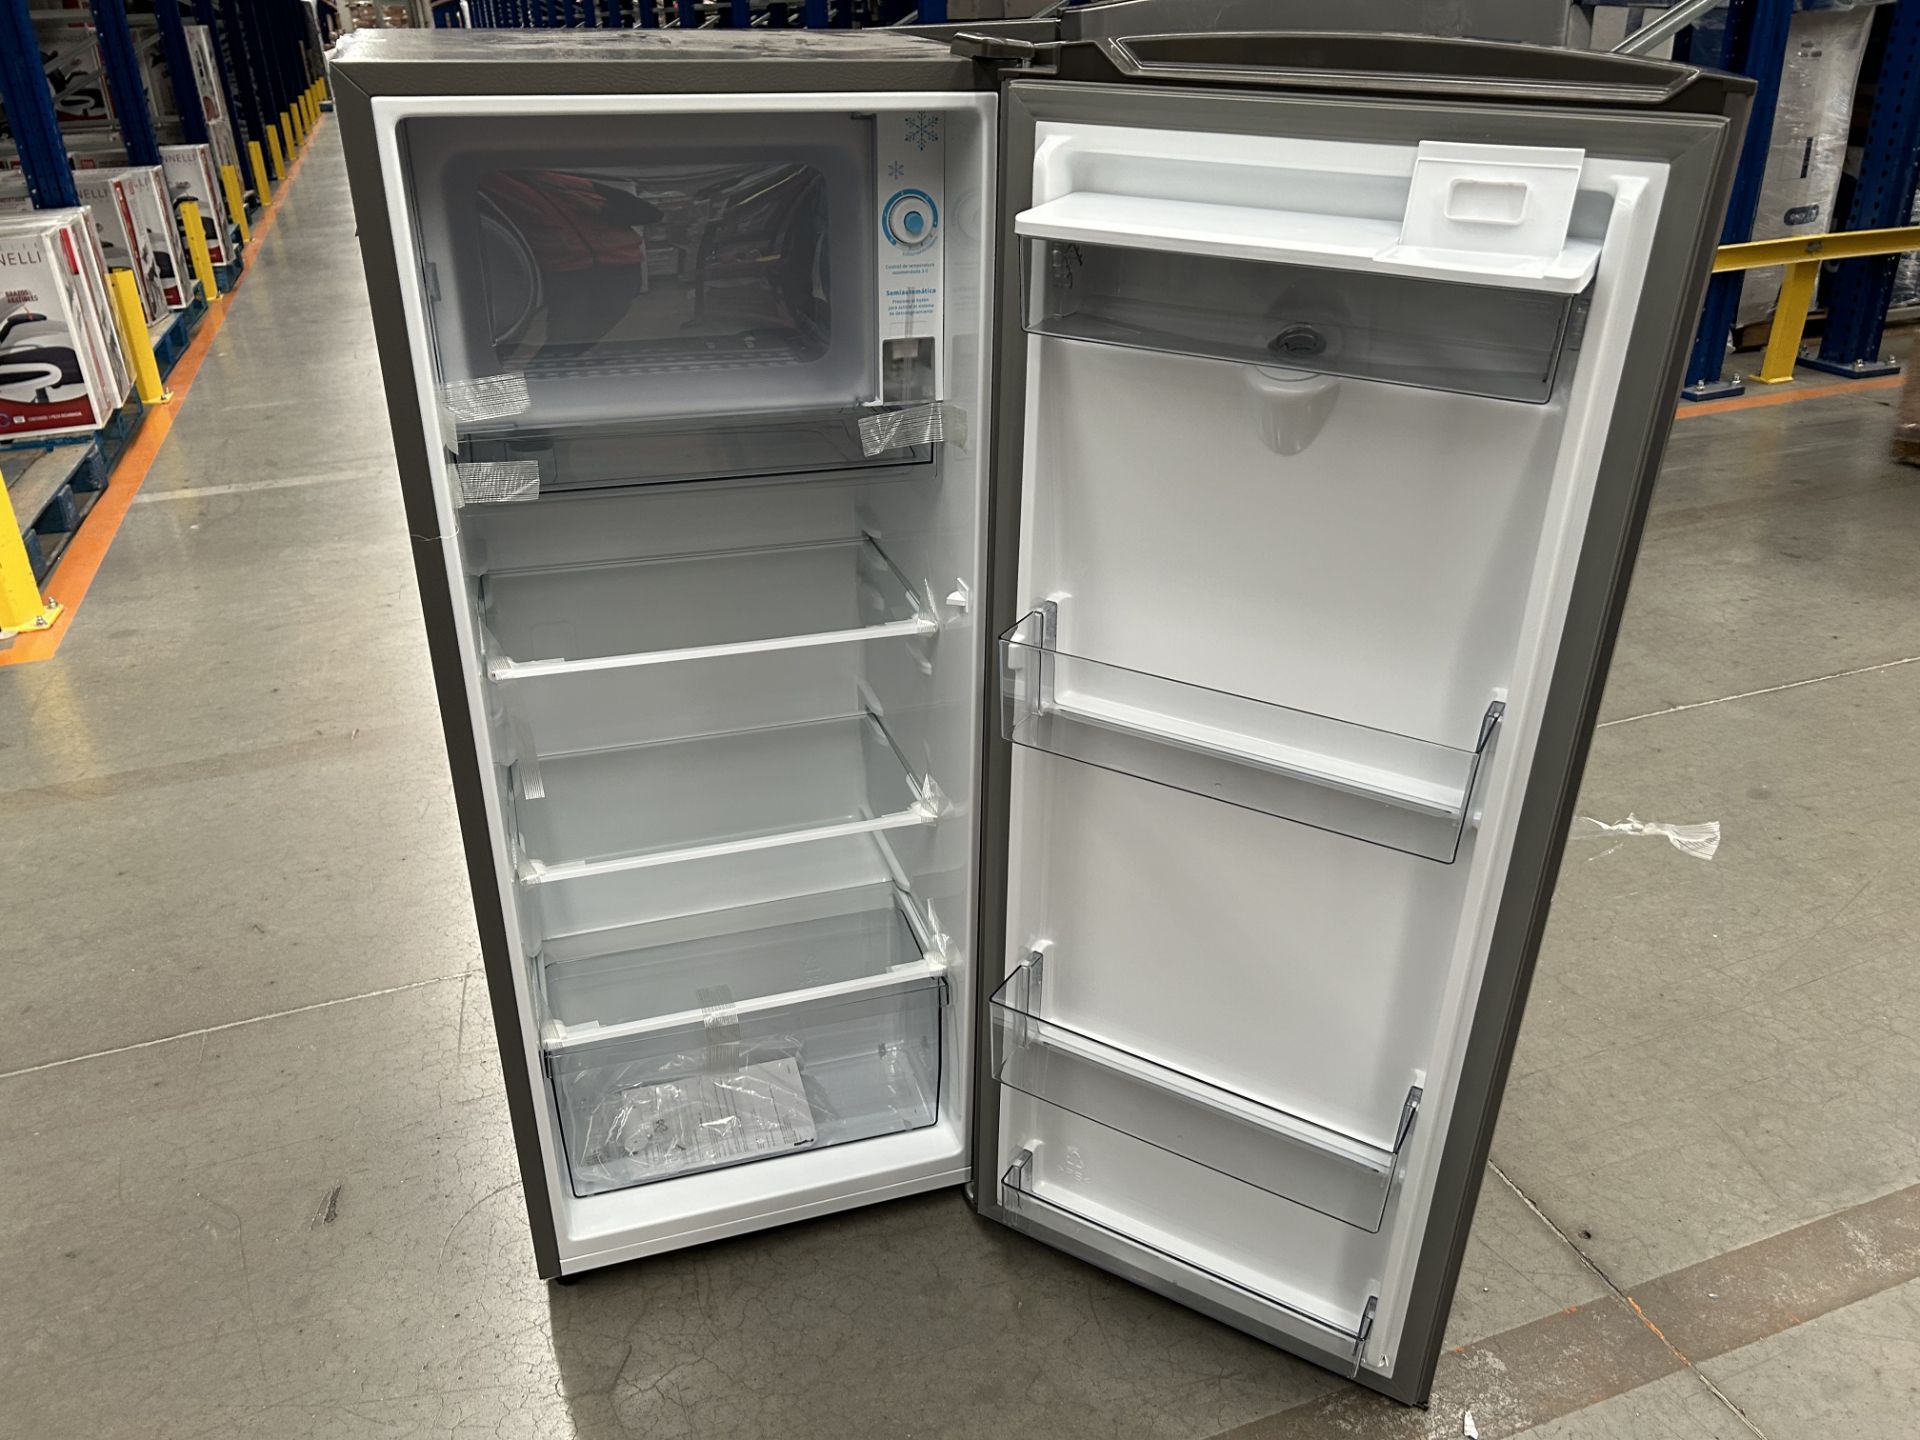 Lote de 2 refrigeradores contiene: 1 Refrigerador con dispensador de agua Marca HISENSE, Modelo RR6 - Image 5 of 6